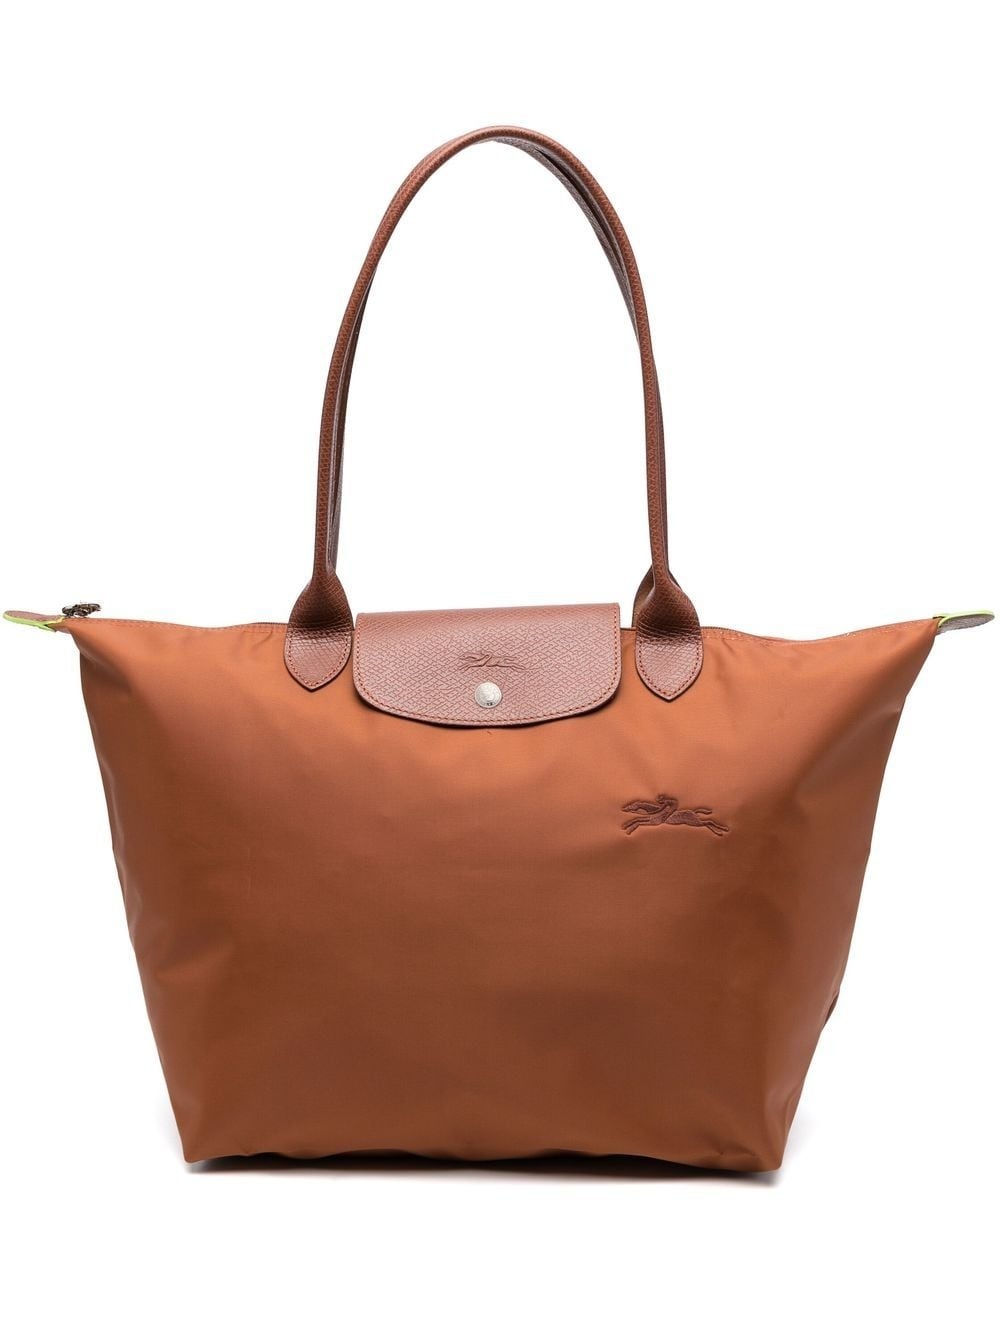 Longchamp, Bags, Longchamp Le Pliage Hobo Crossbody Bag Made France